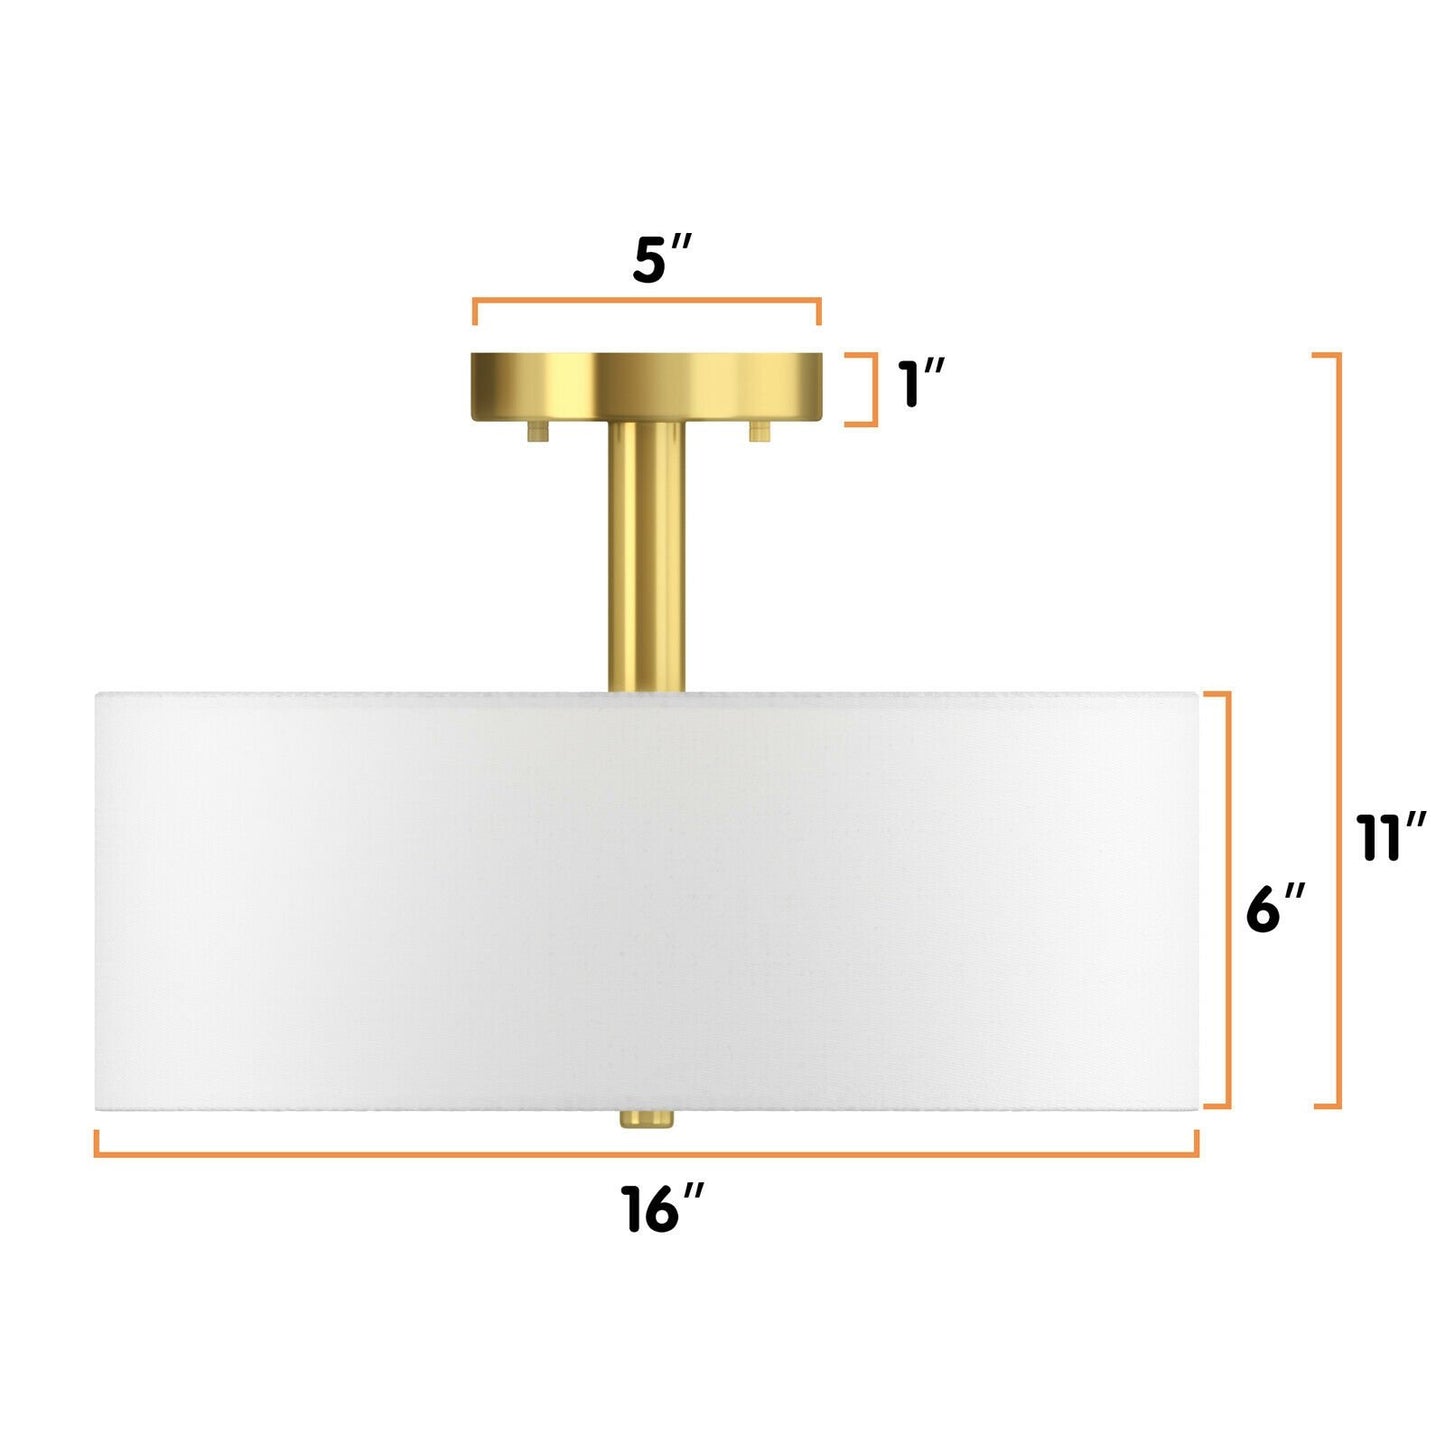 3-Light Semi Flush Mount Ceiling Light Fixture Glass Drum Pendant Lamp, White